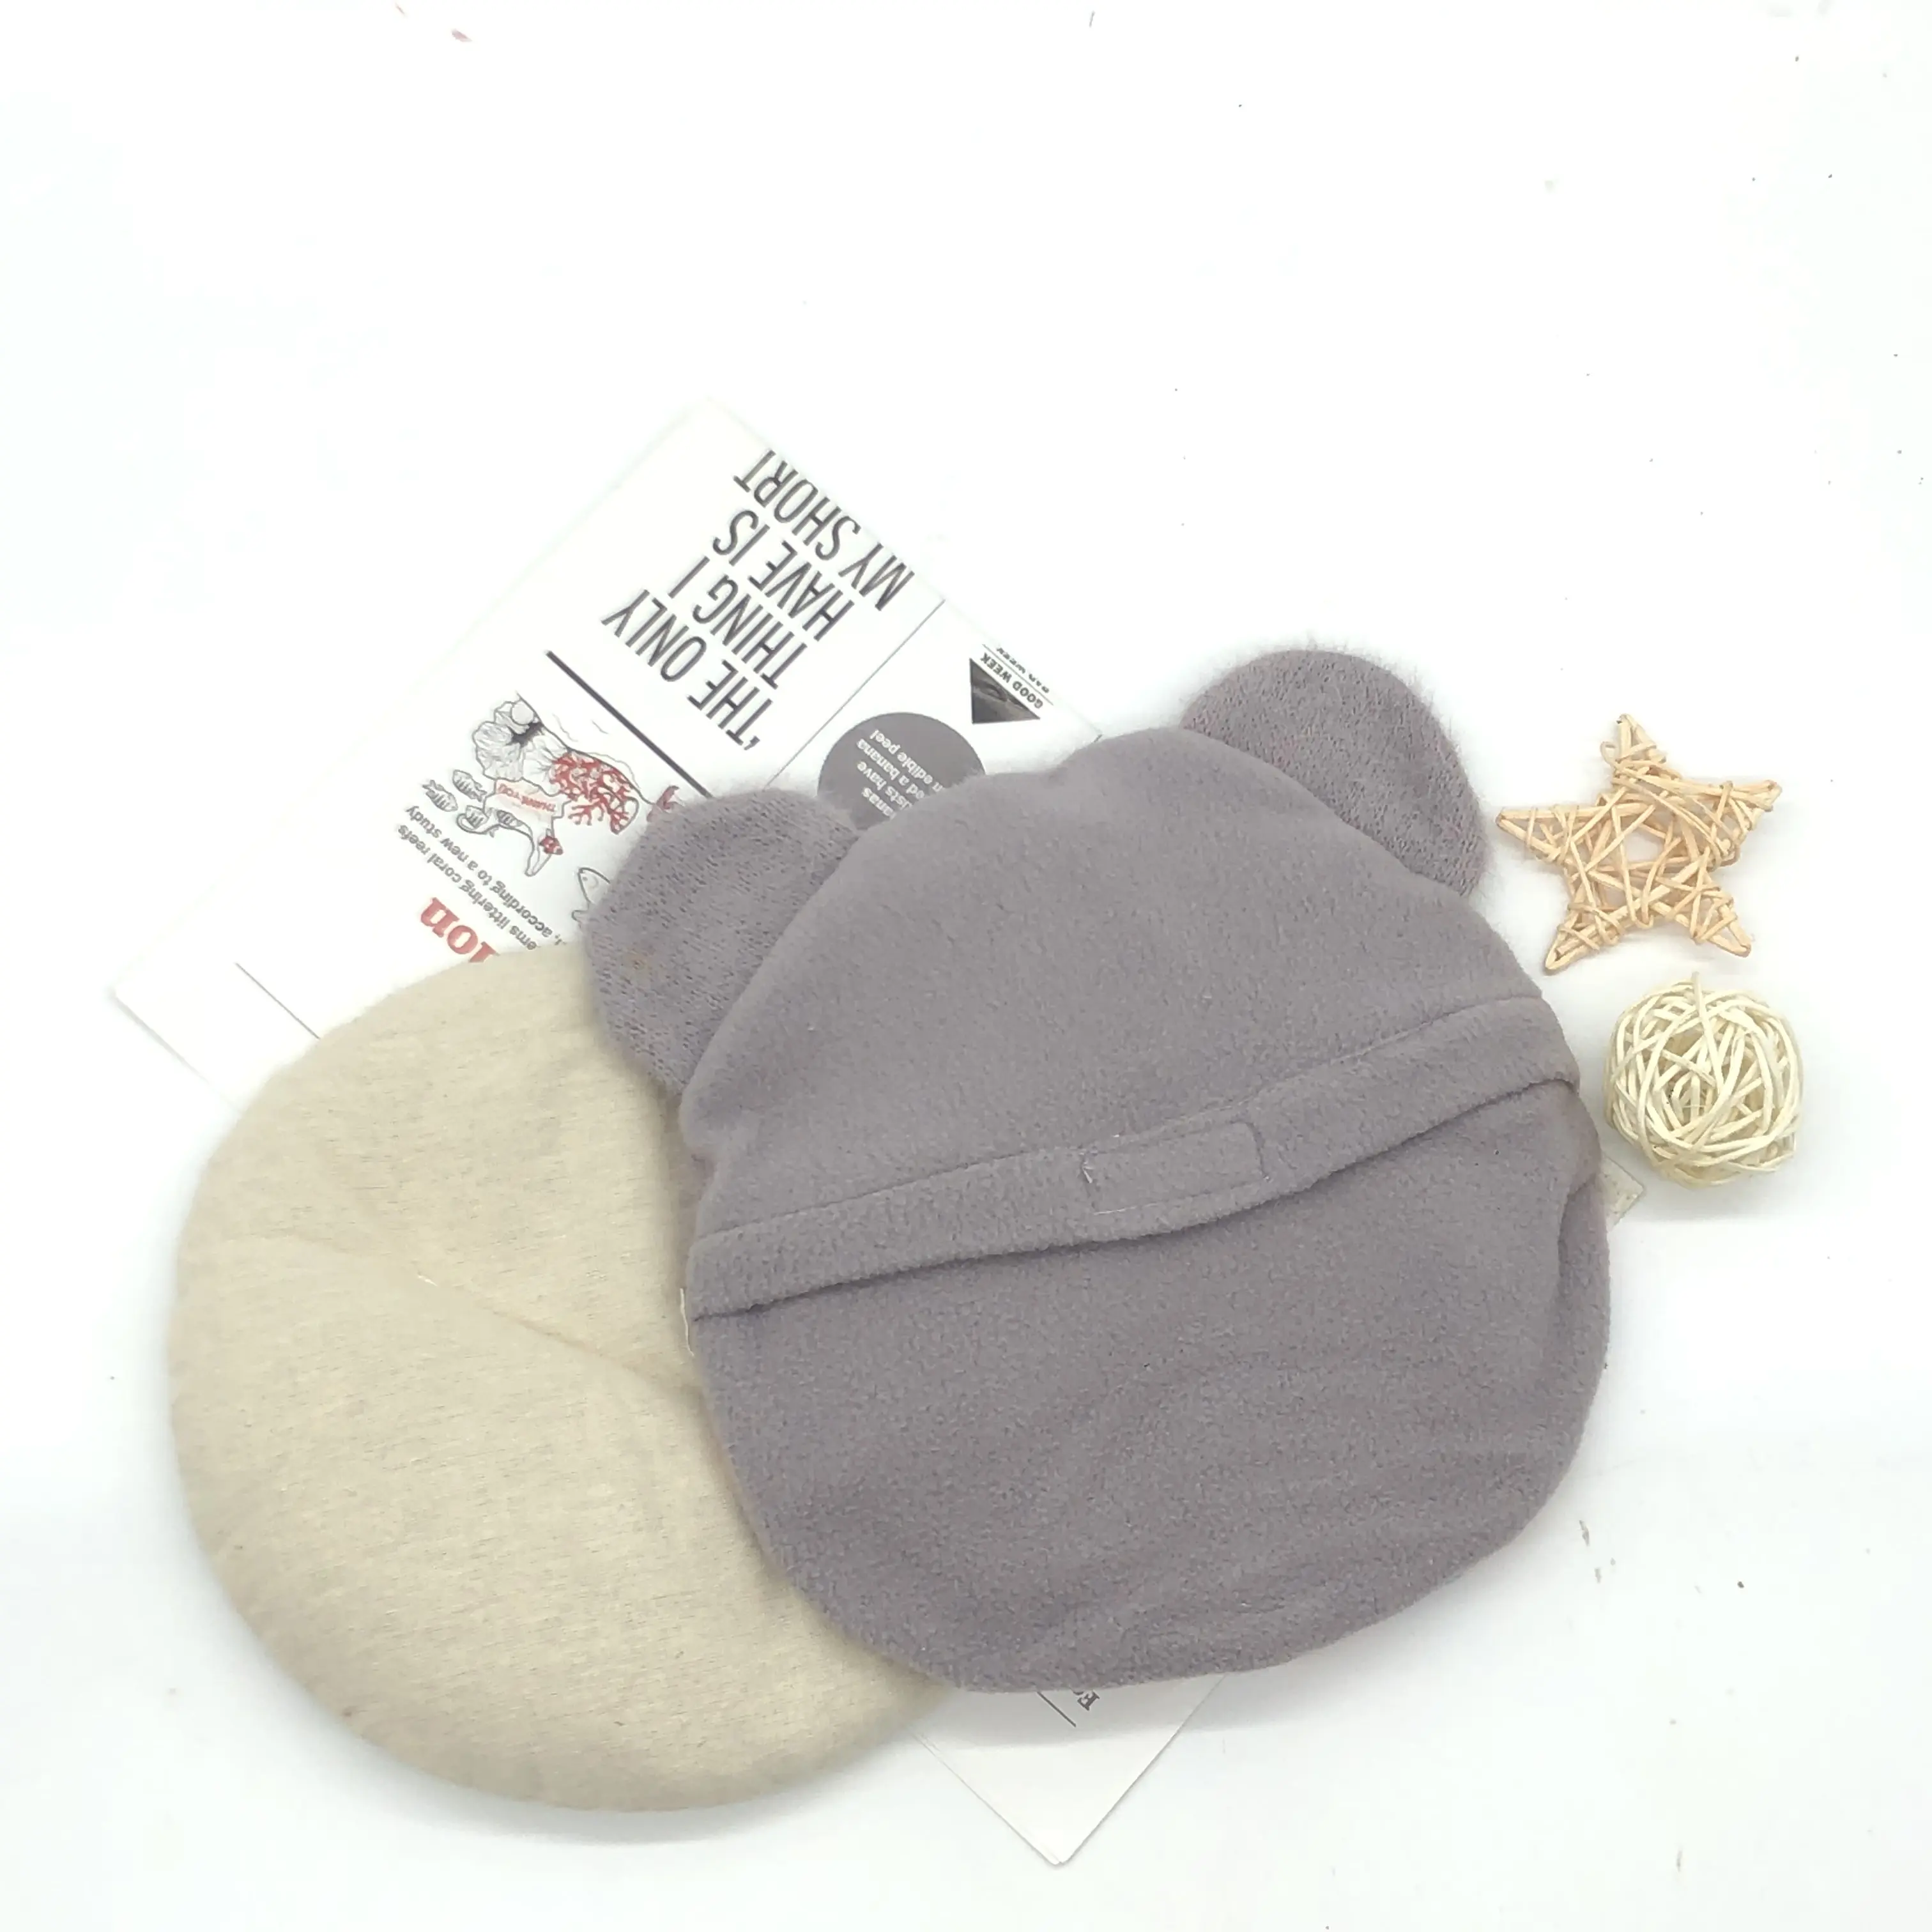 어깨 목 통증 완화 뜨거운 차가운 난방 패드 귀여운 고양이 디자인 전자 레인지 촉촉한 히트 팩 압축 가방